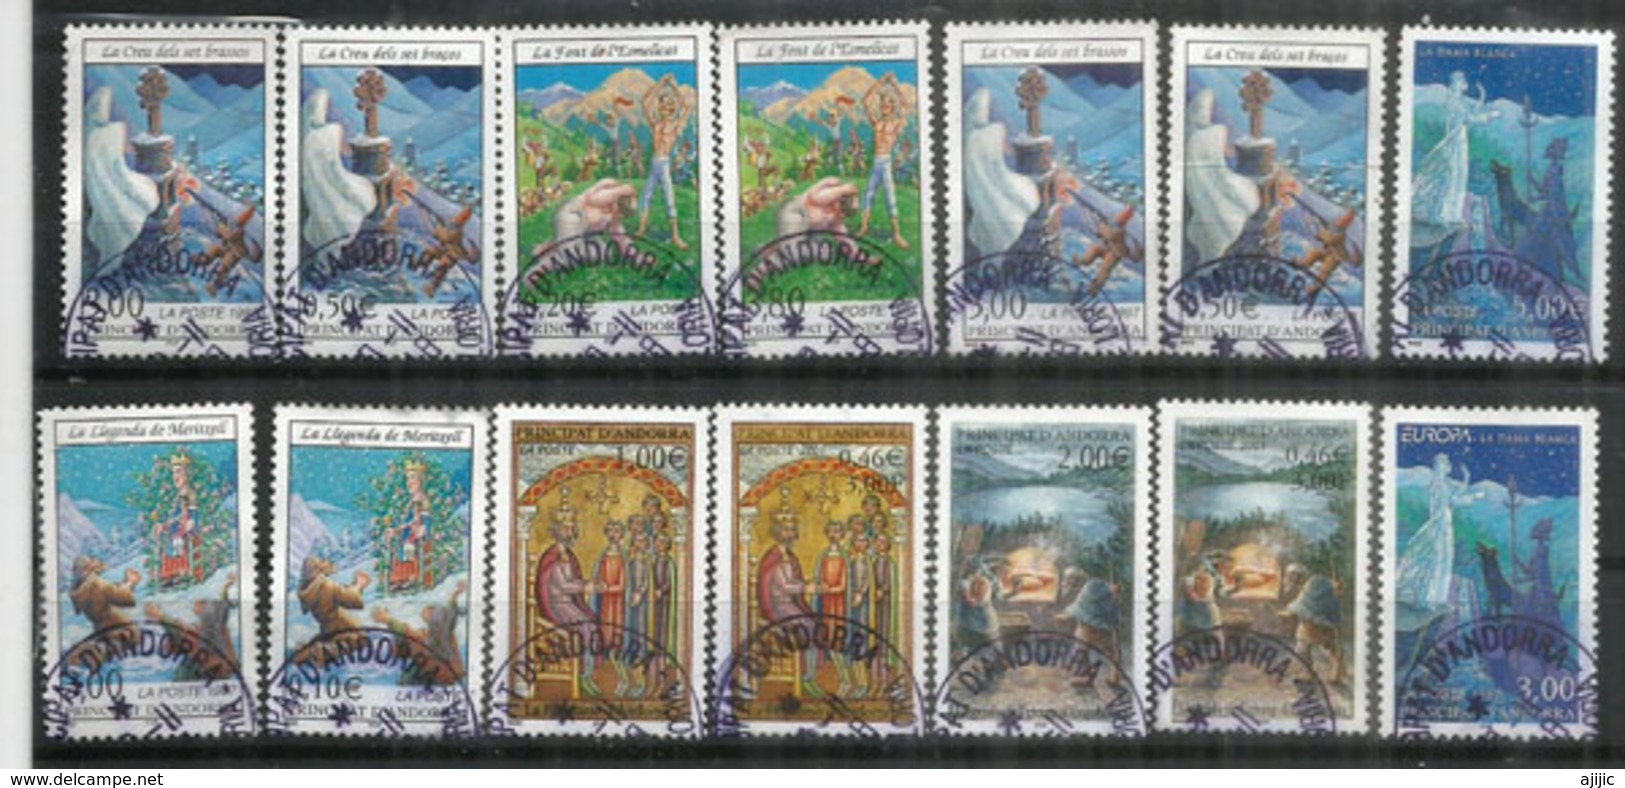 Les Légendes Andorranes. Deux Séries Oblitérés, Complètes, 1 ère émission En Francs, 2 Ième Série En Euro - Used Stamps